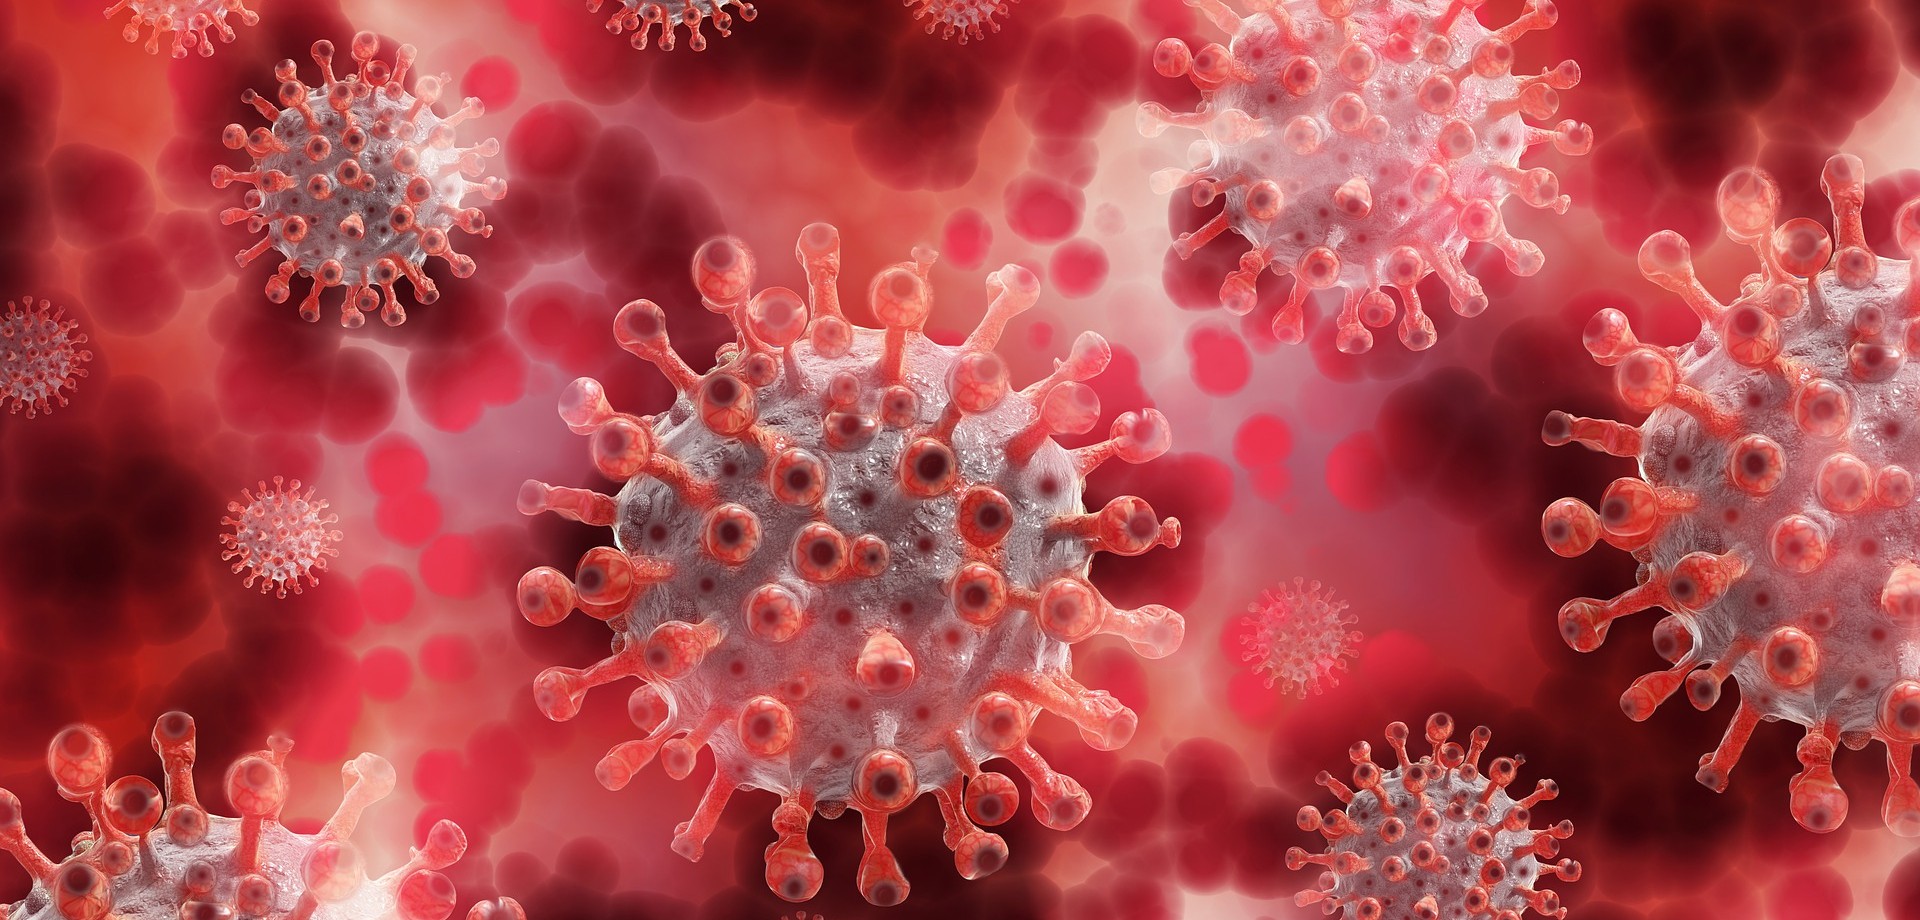 Darstellung von Coronaviren im Blut. Bild: pixabay